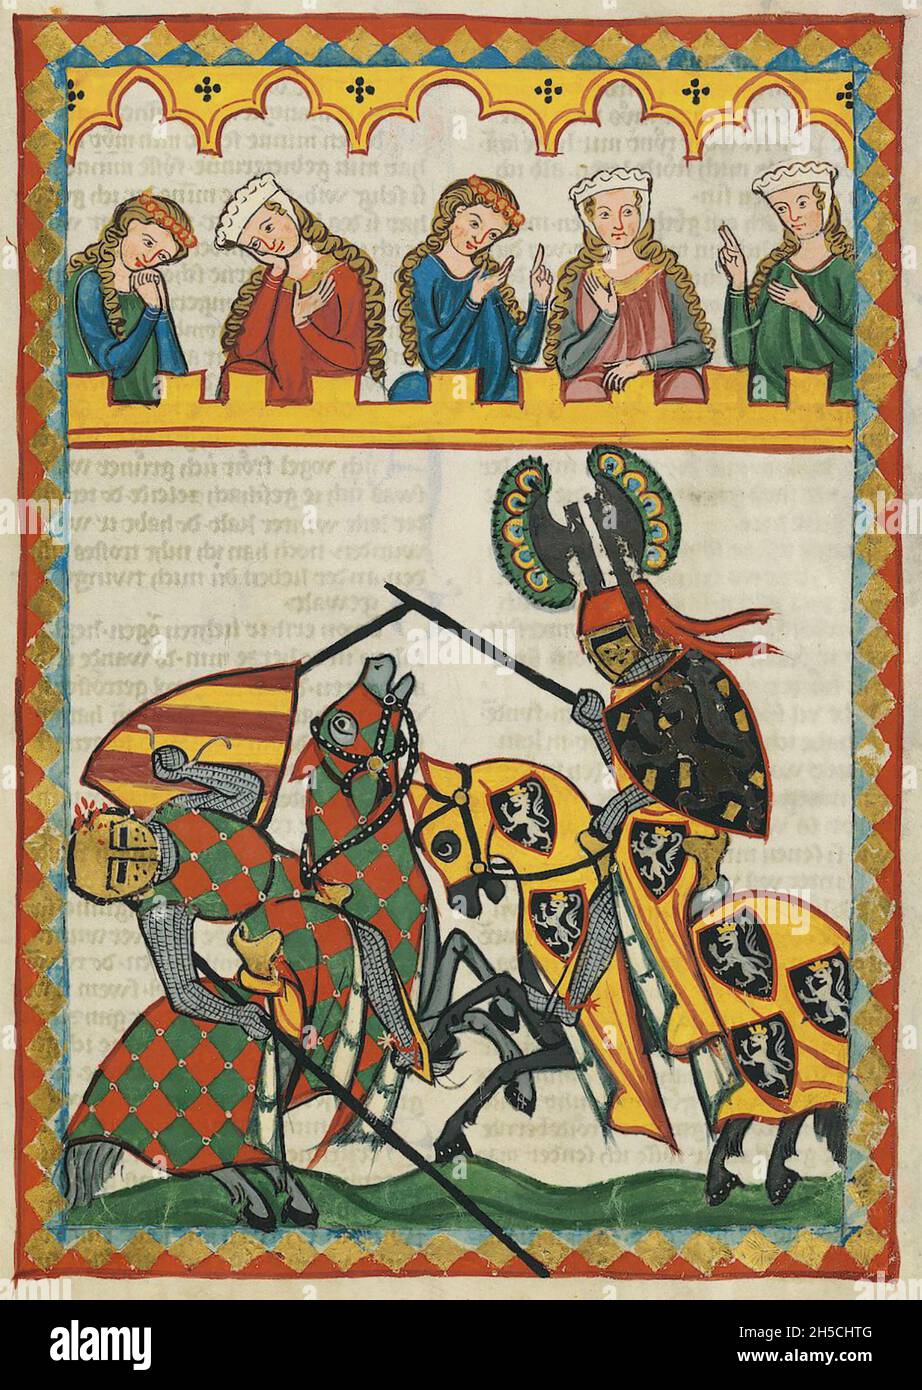 CODEX MANESSE ein deutsches Manuskript aus dem frühen bis mittleren 14. Jahrhundert, das Lieder enthält und das mittelalterliche Leben illustriert. Stockfoto